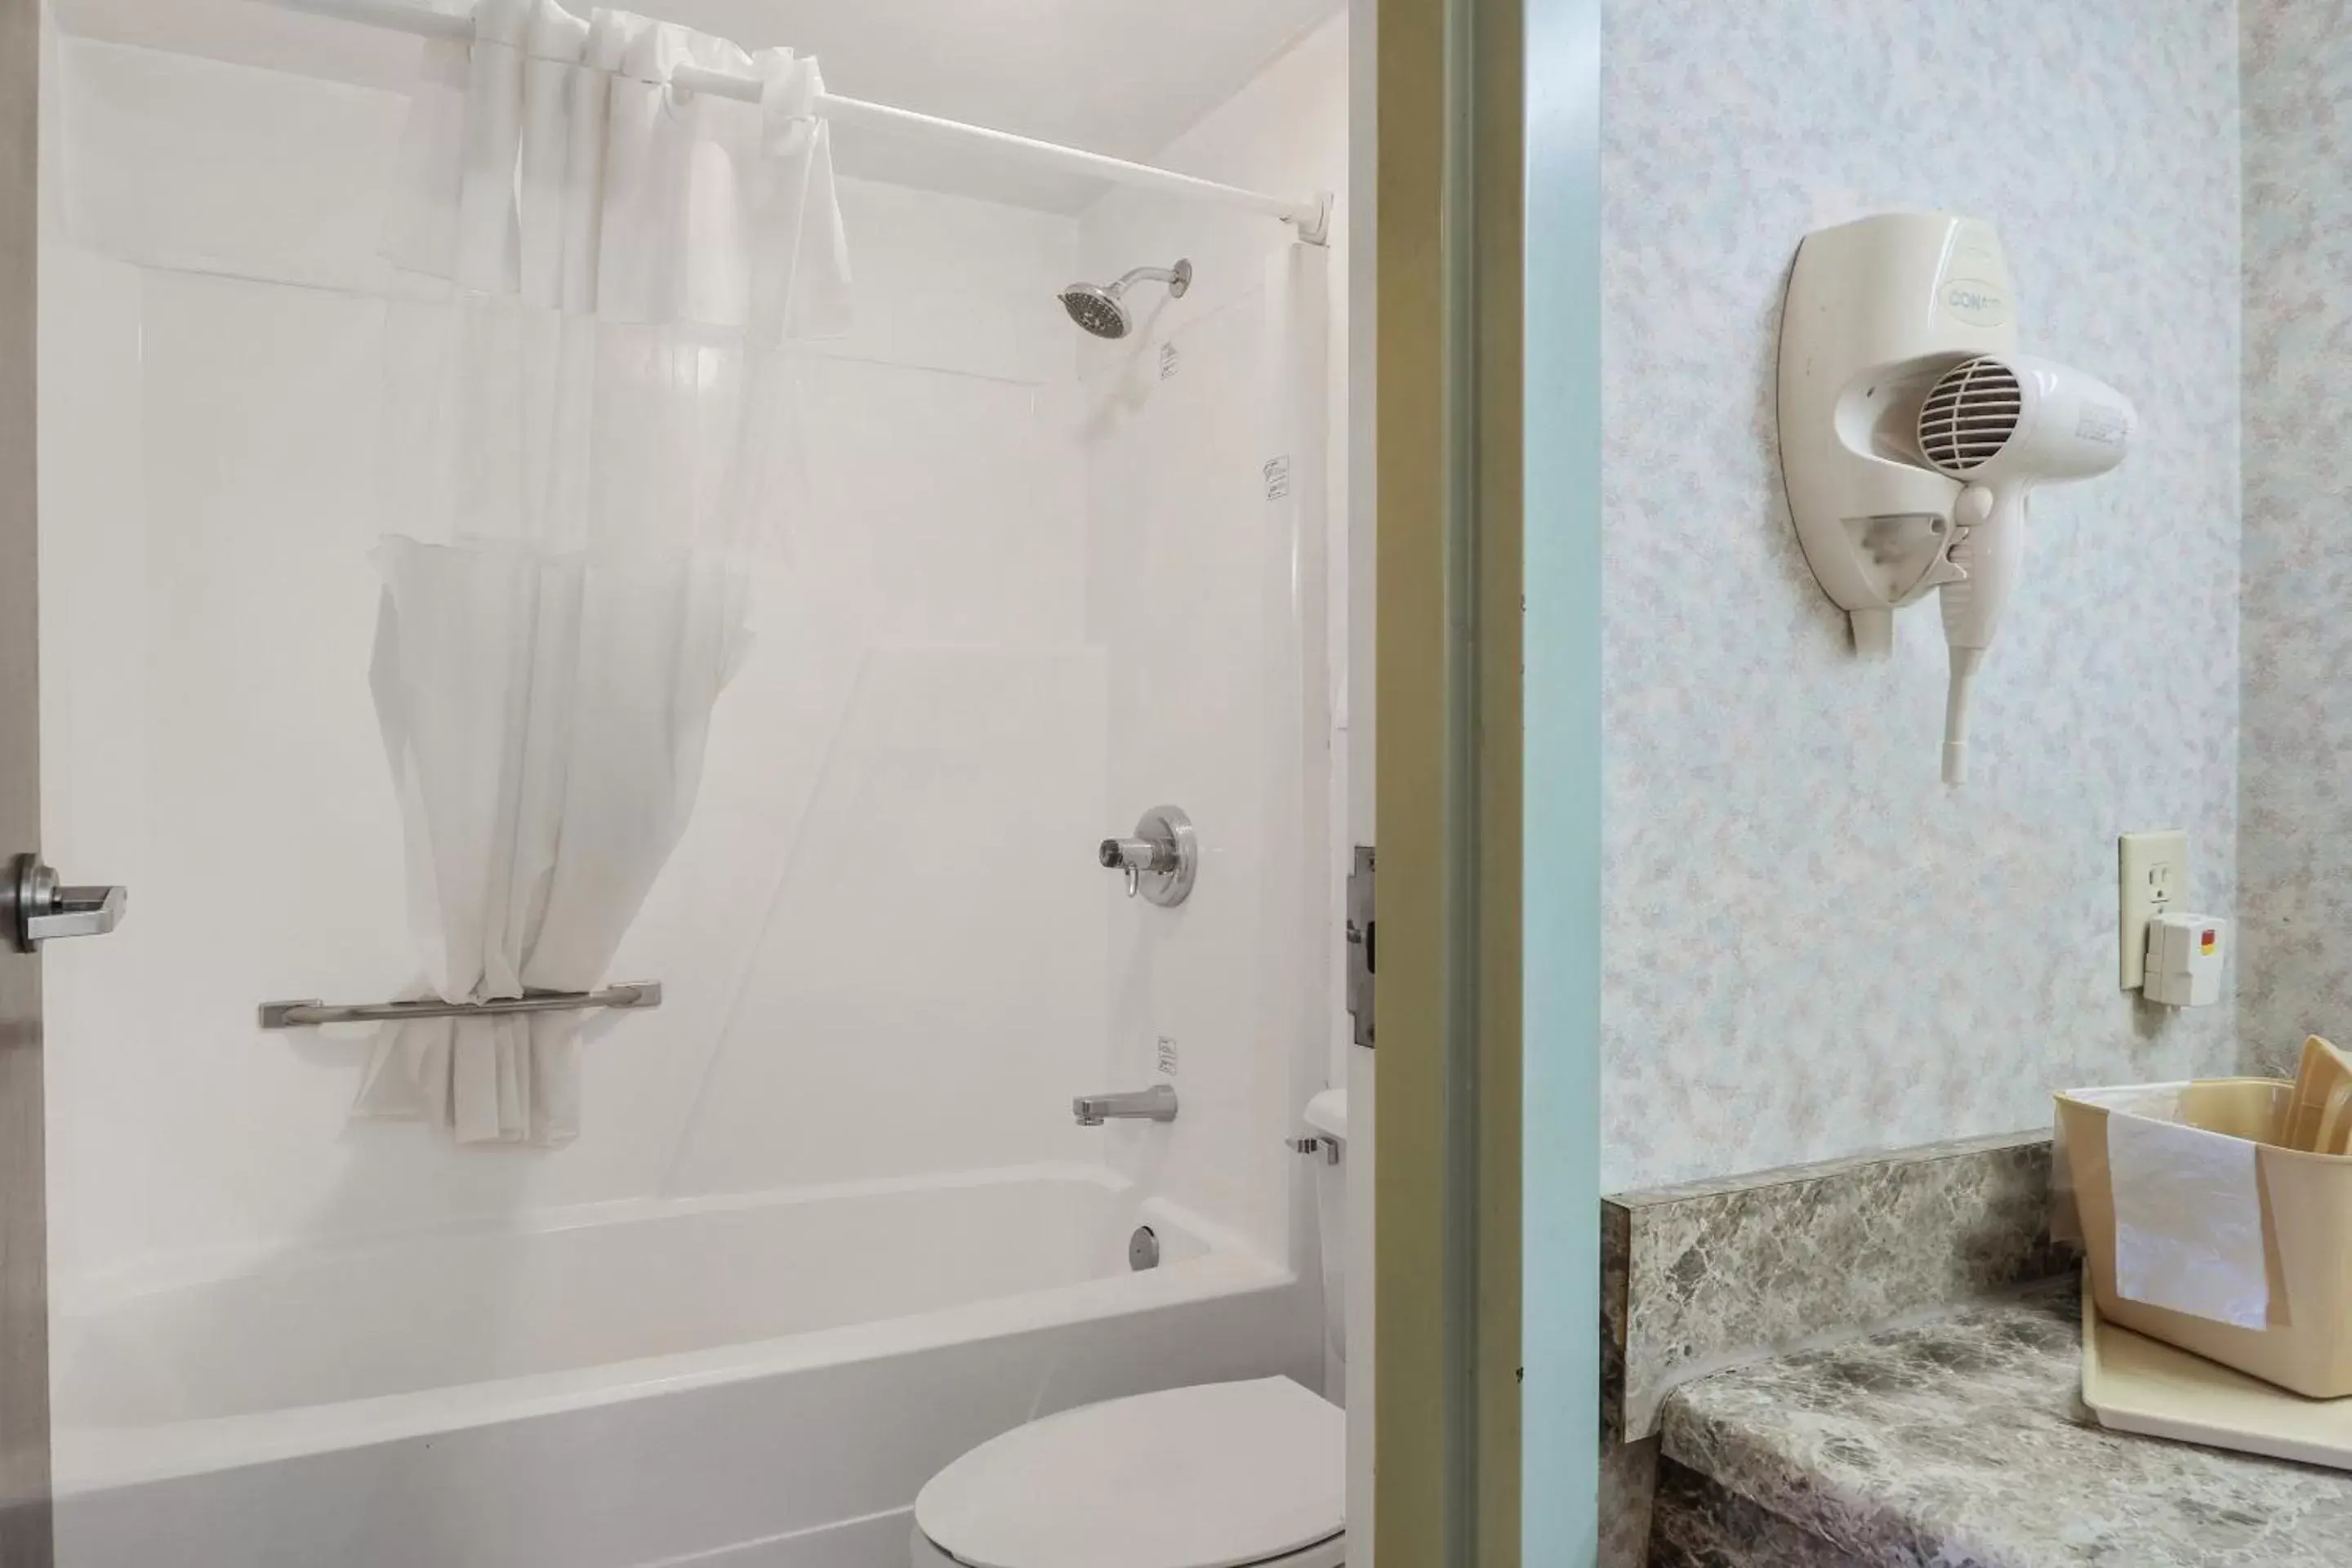 Bathroom in Lonestar Inn & Suites, Erick OK Hwy 40 BY OYO